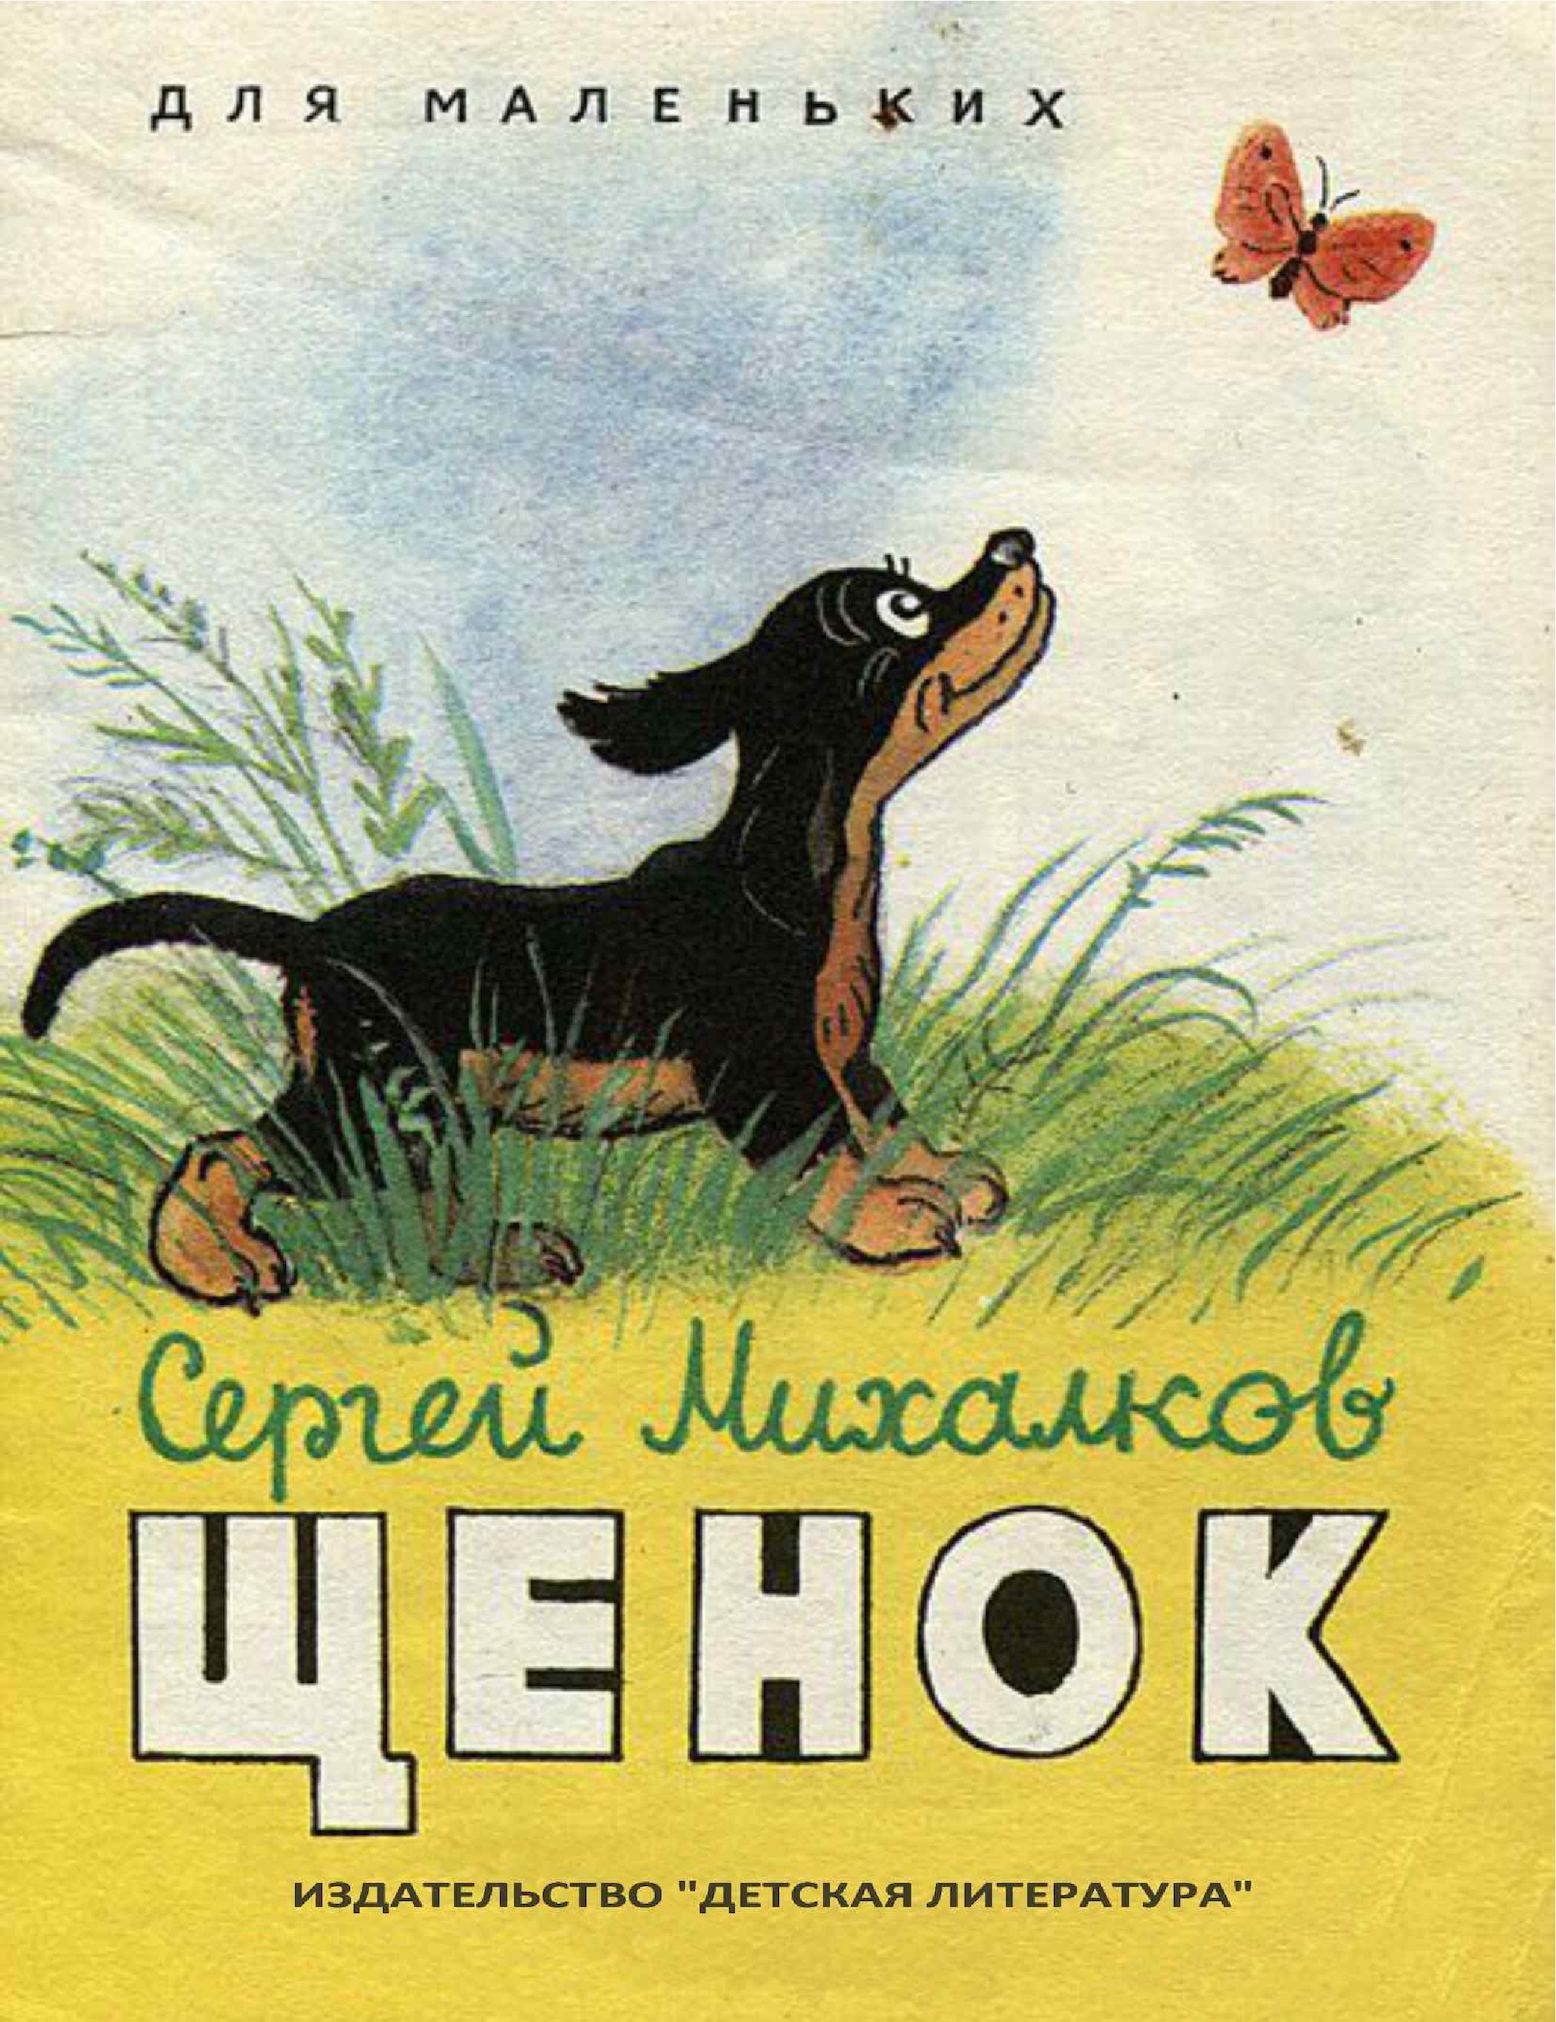 Читательский дневник «мой щенок» сергея михалкова